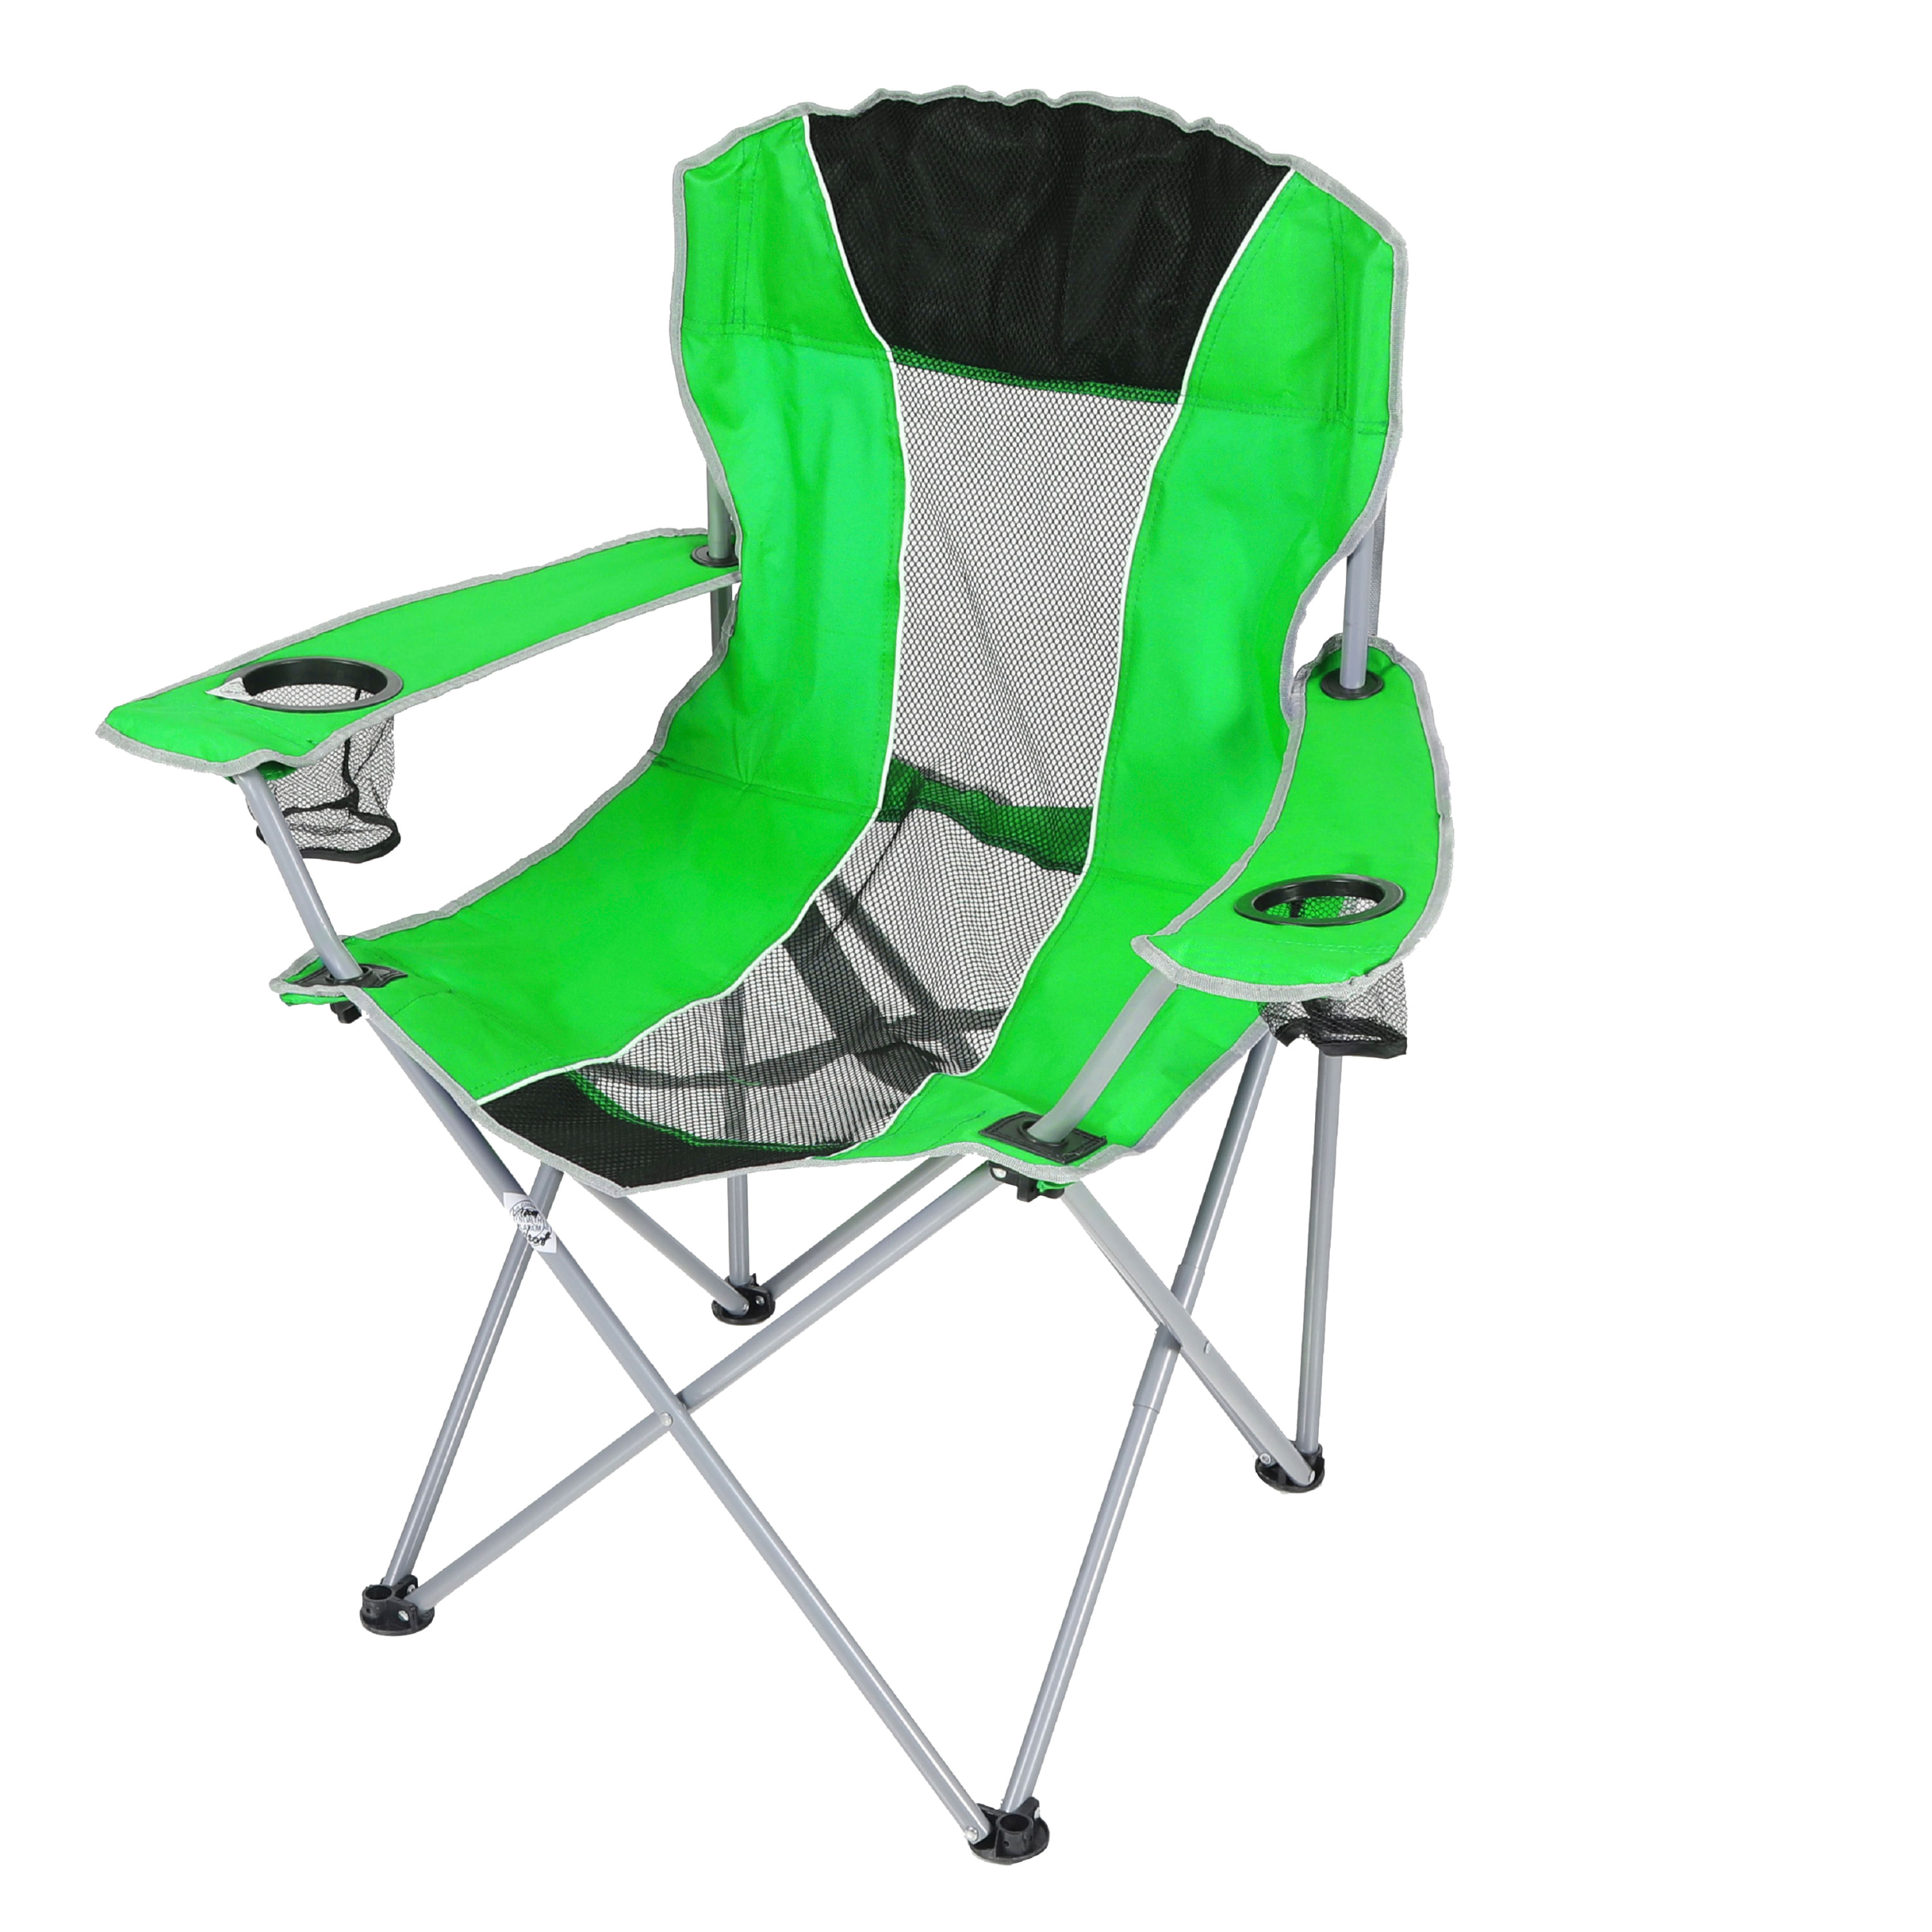 TitanPRO Silla plegable de plástico blanco, paquete de 10, silla plegable  ligera para exteriores, sillas de patio duraderas, juego de sillas para